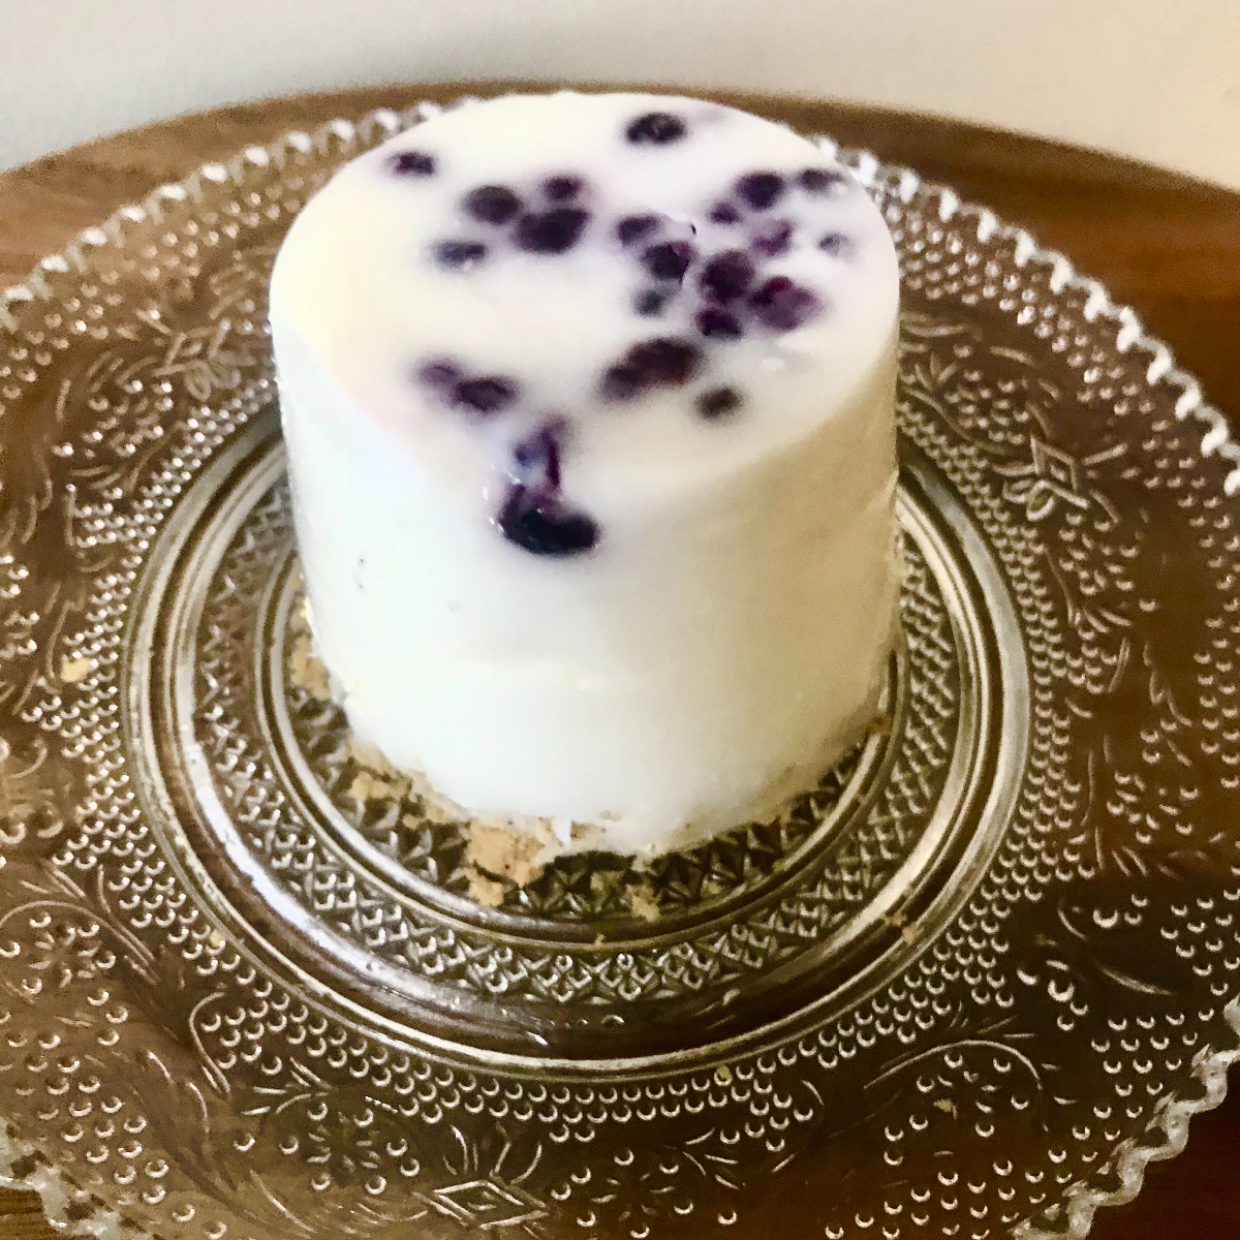  裏ワザスイーツ♡ カップのヨーグルトを使ったレアチーズケーキの簡単レシピ 